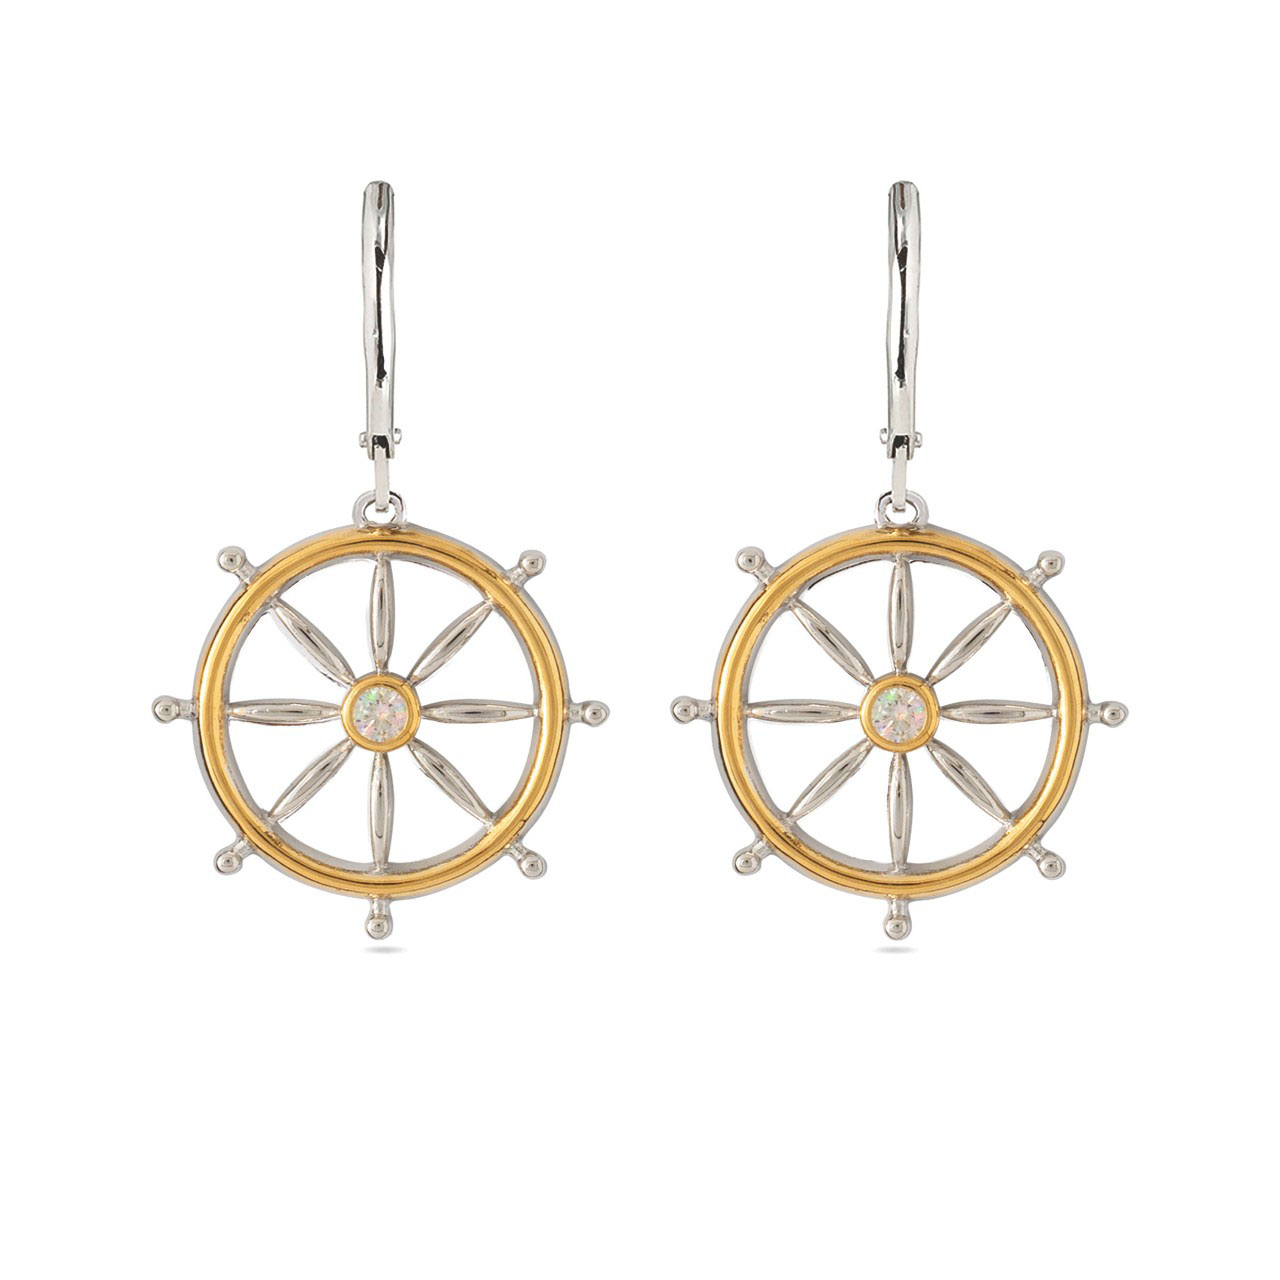 Ship's Wheel Pendant and Earrings Set